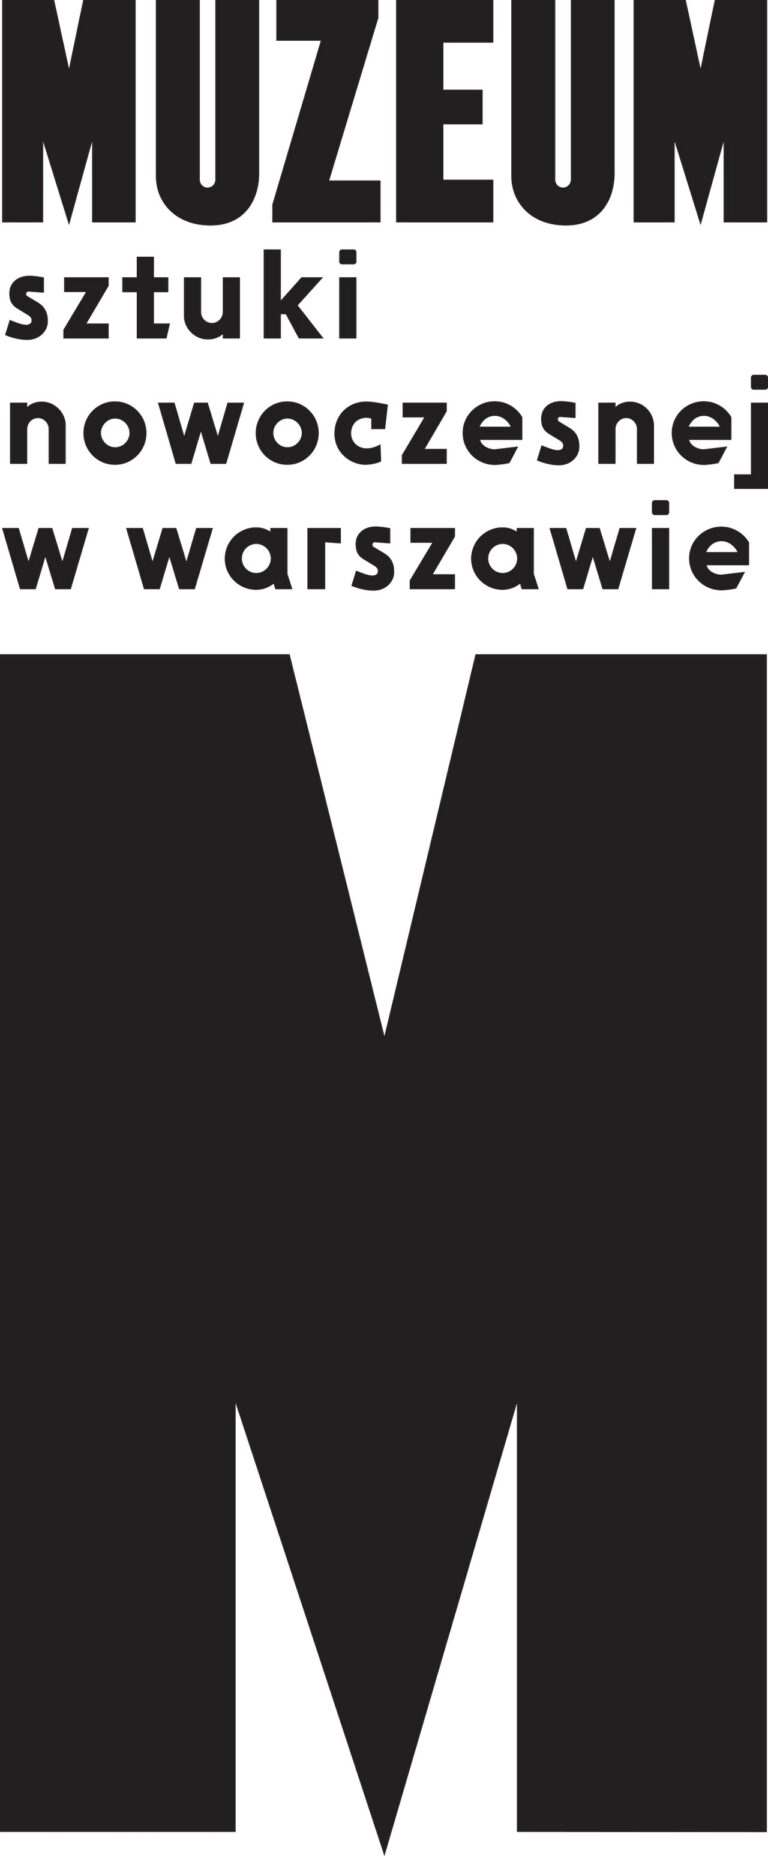 Specjalista ds. konserwacji zbiorów w Muzeum Sztuki Nowoczesnej w Warszawie